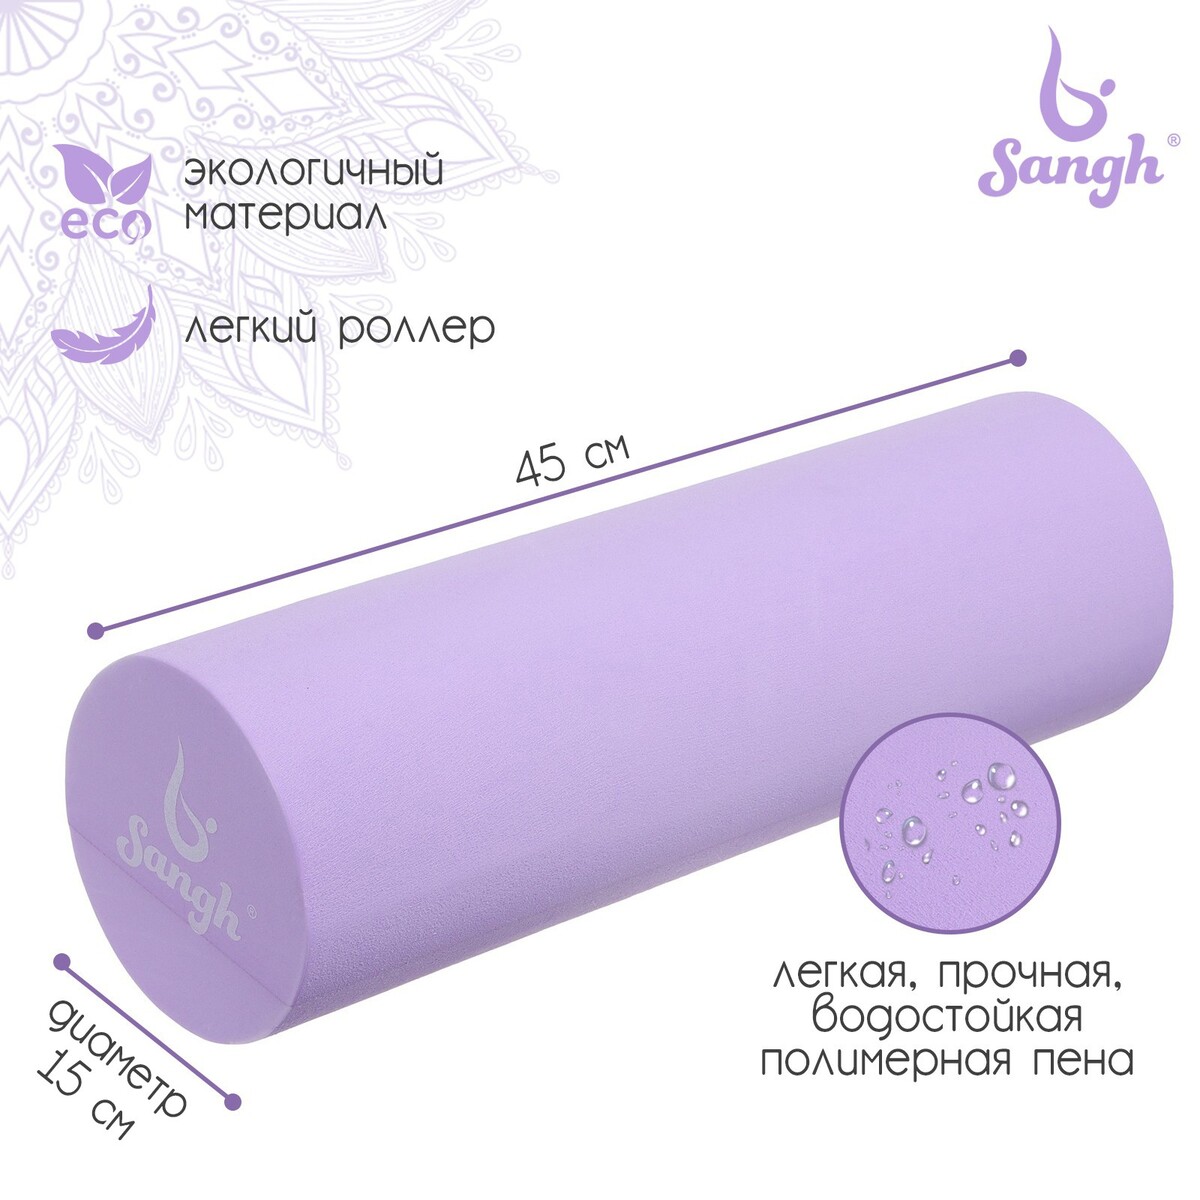 Ролик массажный sangh, 45х15 см, цвет фиолетовый ролик массажный средняя жесткость pro 32 5x12 5 cм star fit fa 507 мятный серый